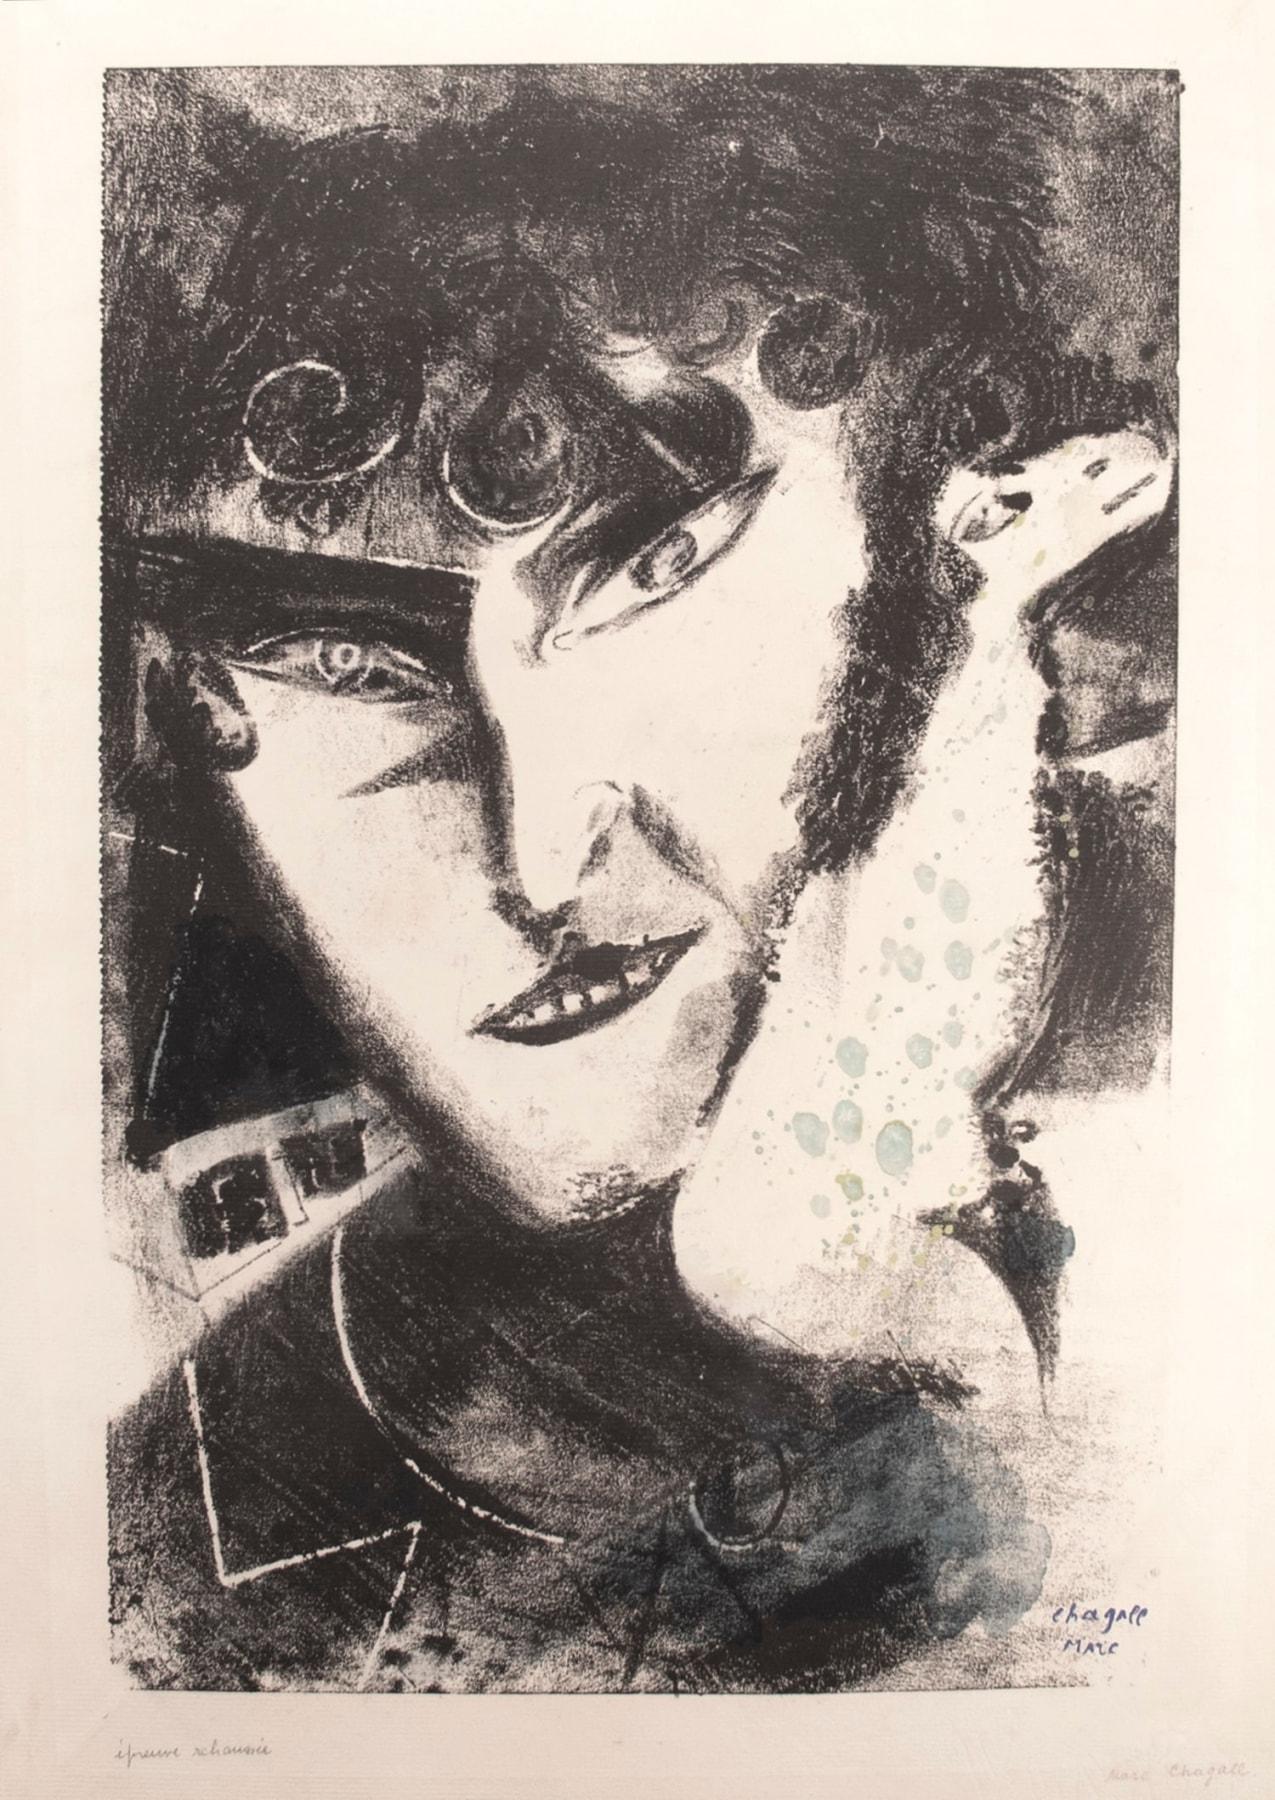 Marc Chagall Portrait Print - Autoportrait avec chèvre (Self Portrait with Goat)